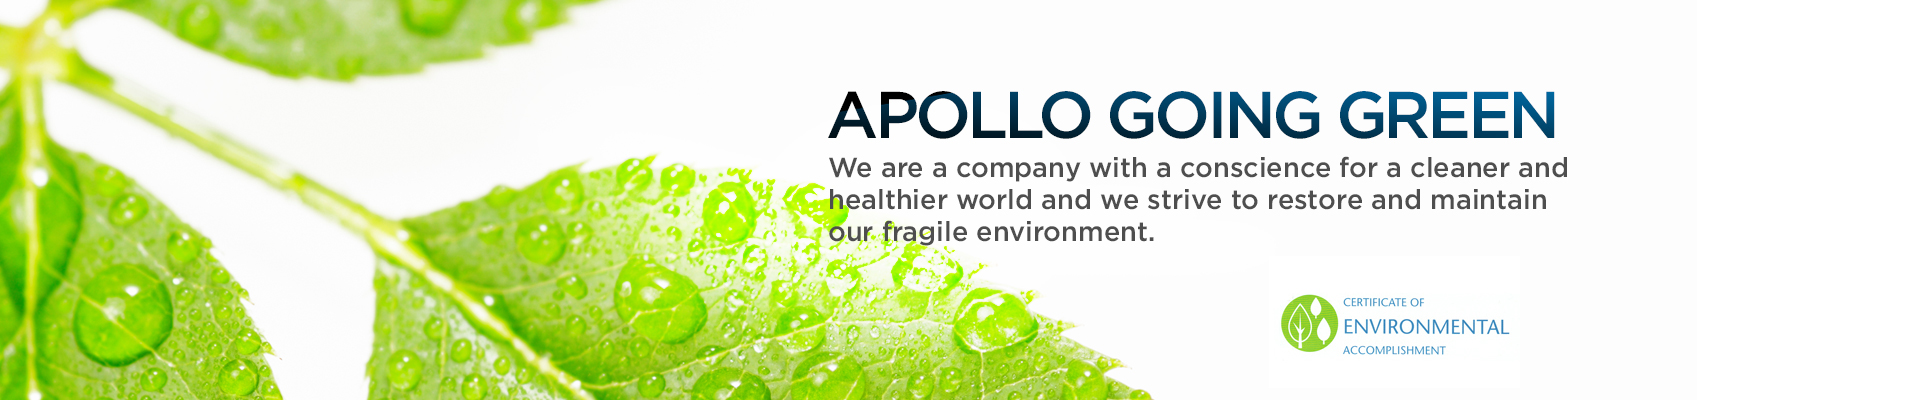 Apollo Health & Beauty Care